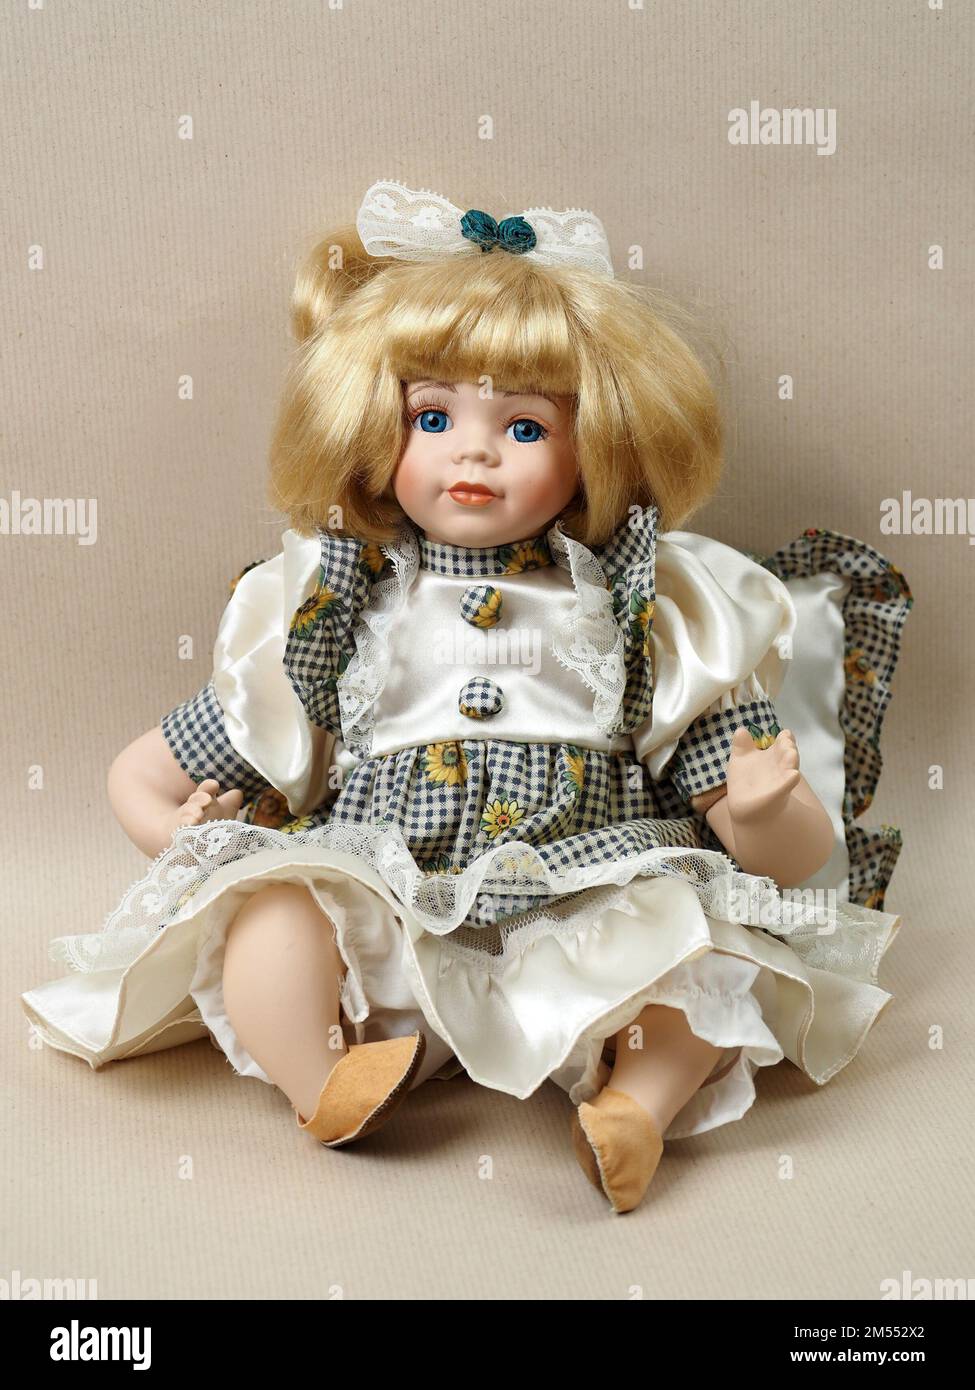 Muñeca de porcelana vintage bebé niña con ojos azules, rubia con lazo en el pelo, en un vestido a y una blusa blanca. Las muñecas de porcelana eran en